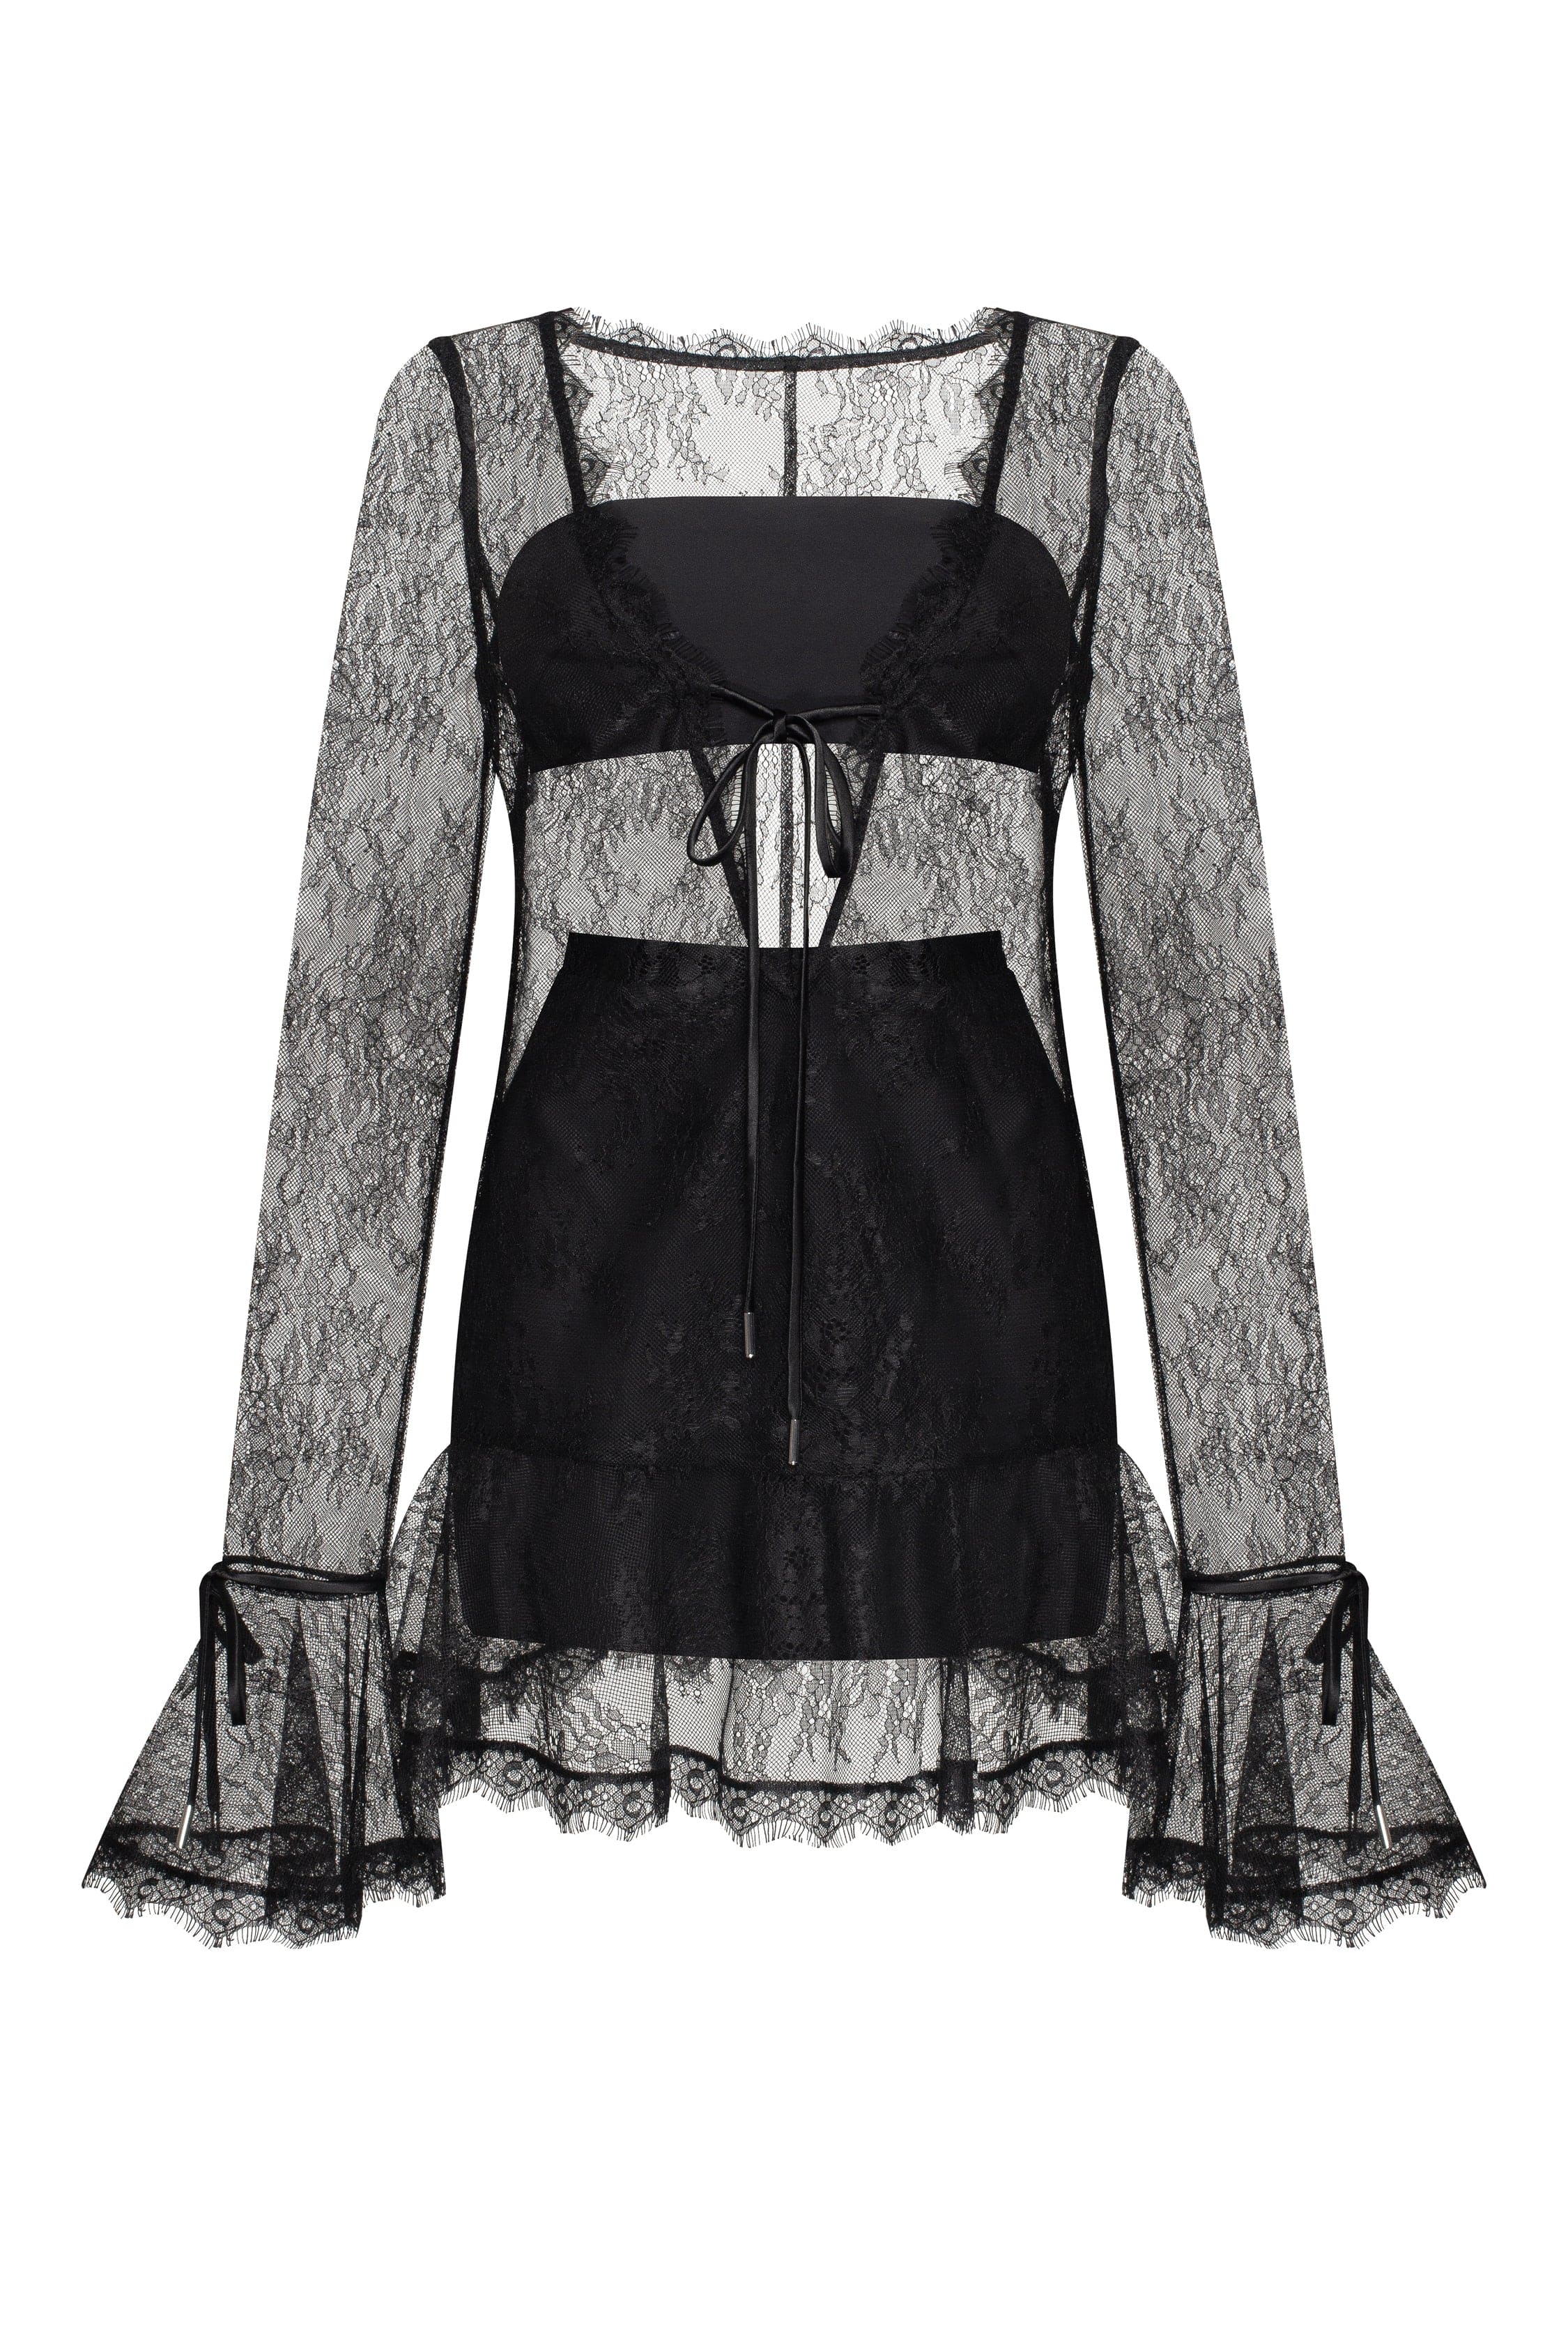 Alluring semi-transparent lace mini dress in black, Xo Xo ➤➤ Milla Dresses  - USA, Worldwide delivery